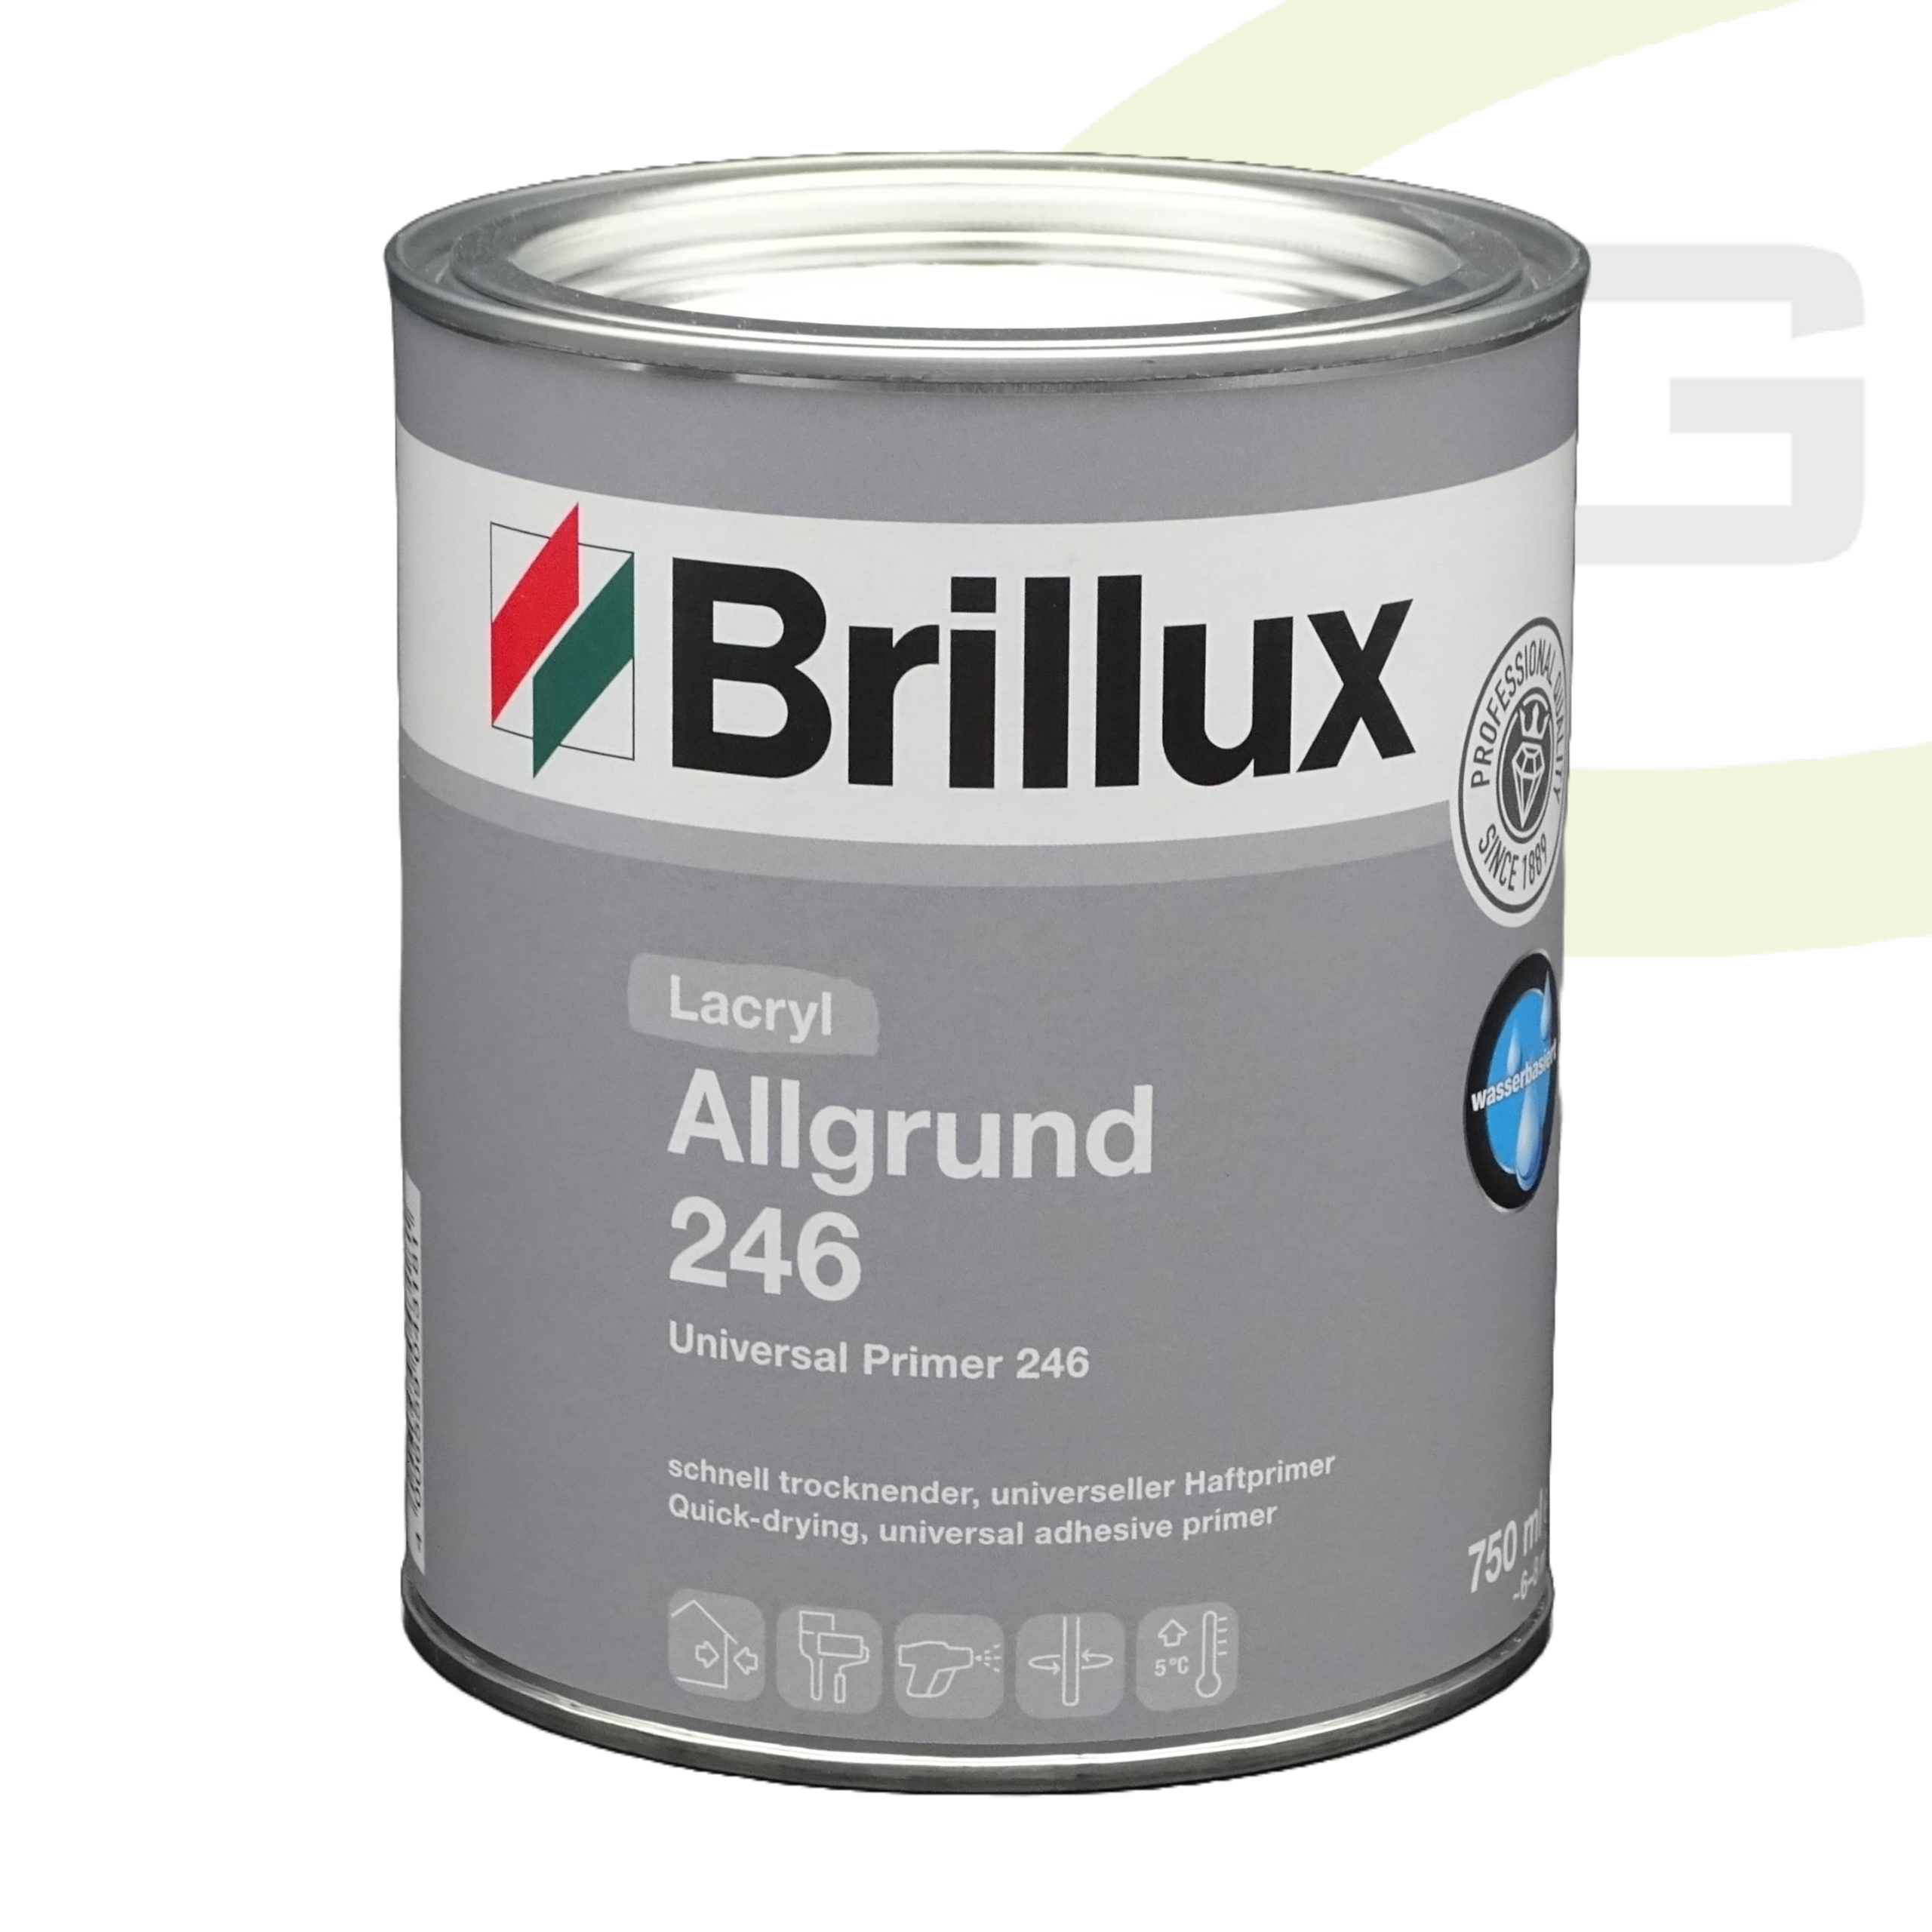 Brillux Lacryl Allgrund 246 weiß - 750ml / Wasserbasierter Primer